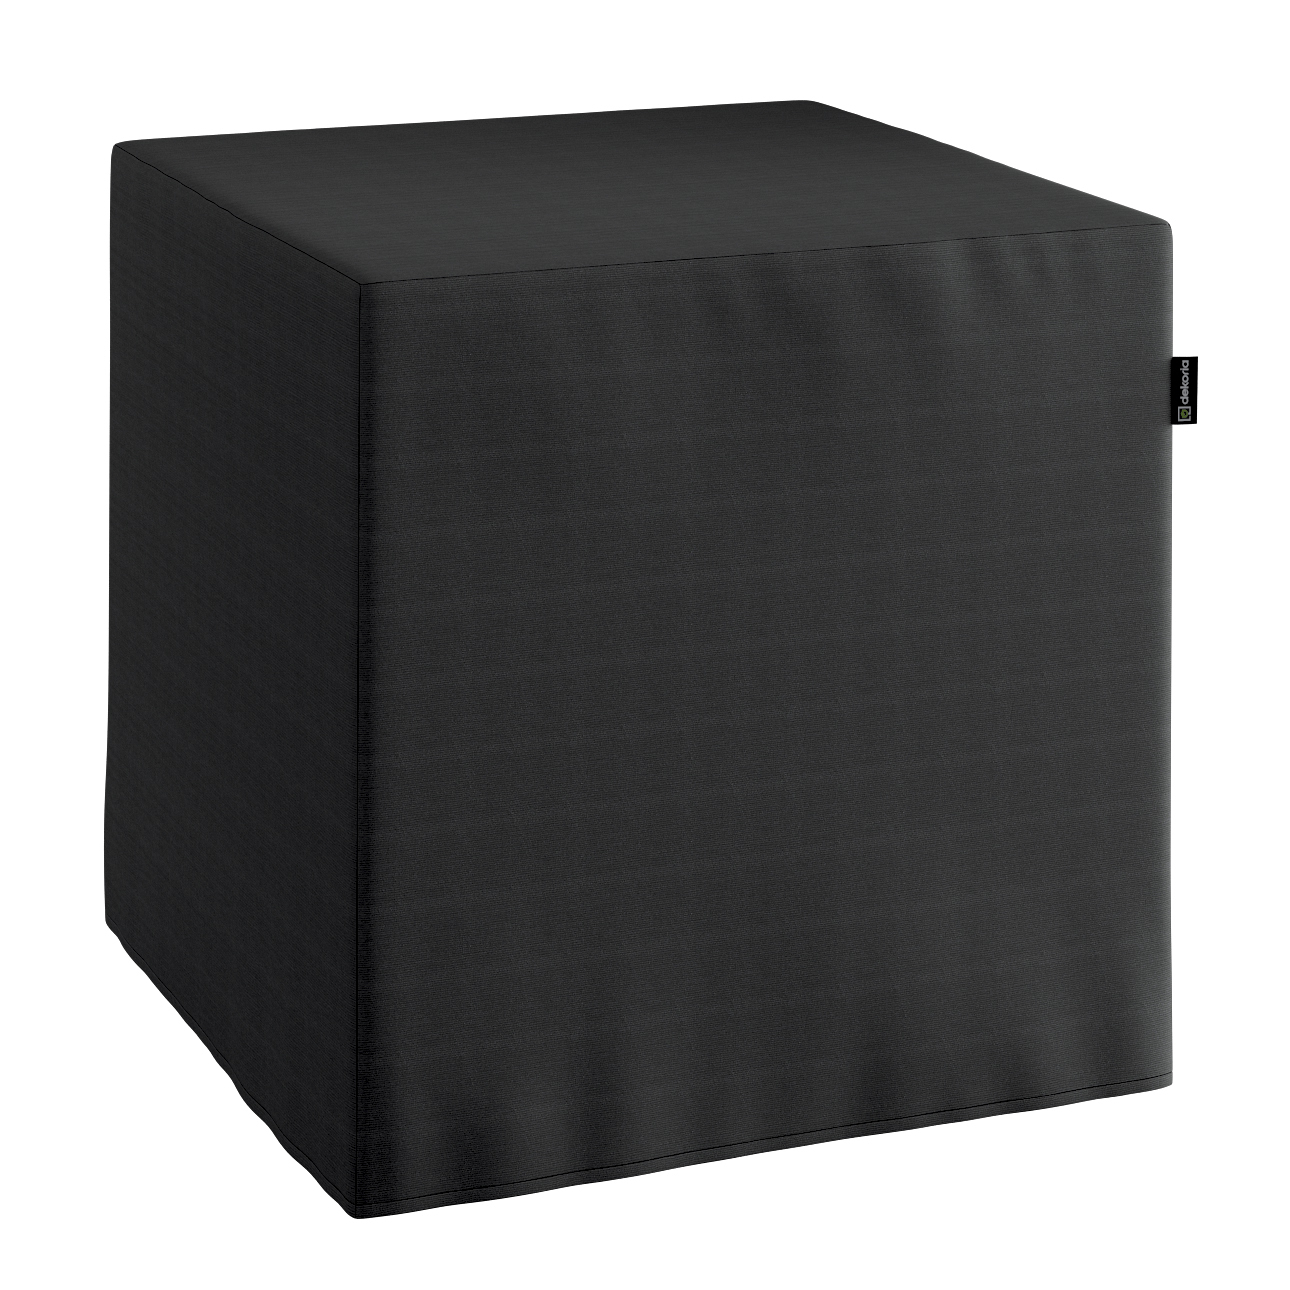 Bezug für Sitzwürfel, schwarz, Bezug für Sitzwürfel 40 x 40 x 40 cm, Loneta günstig online kaufen